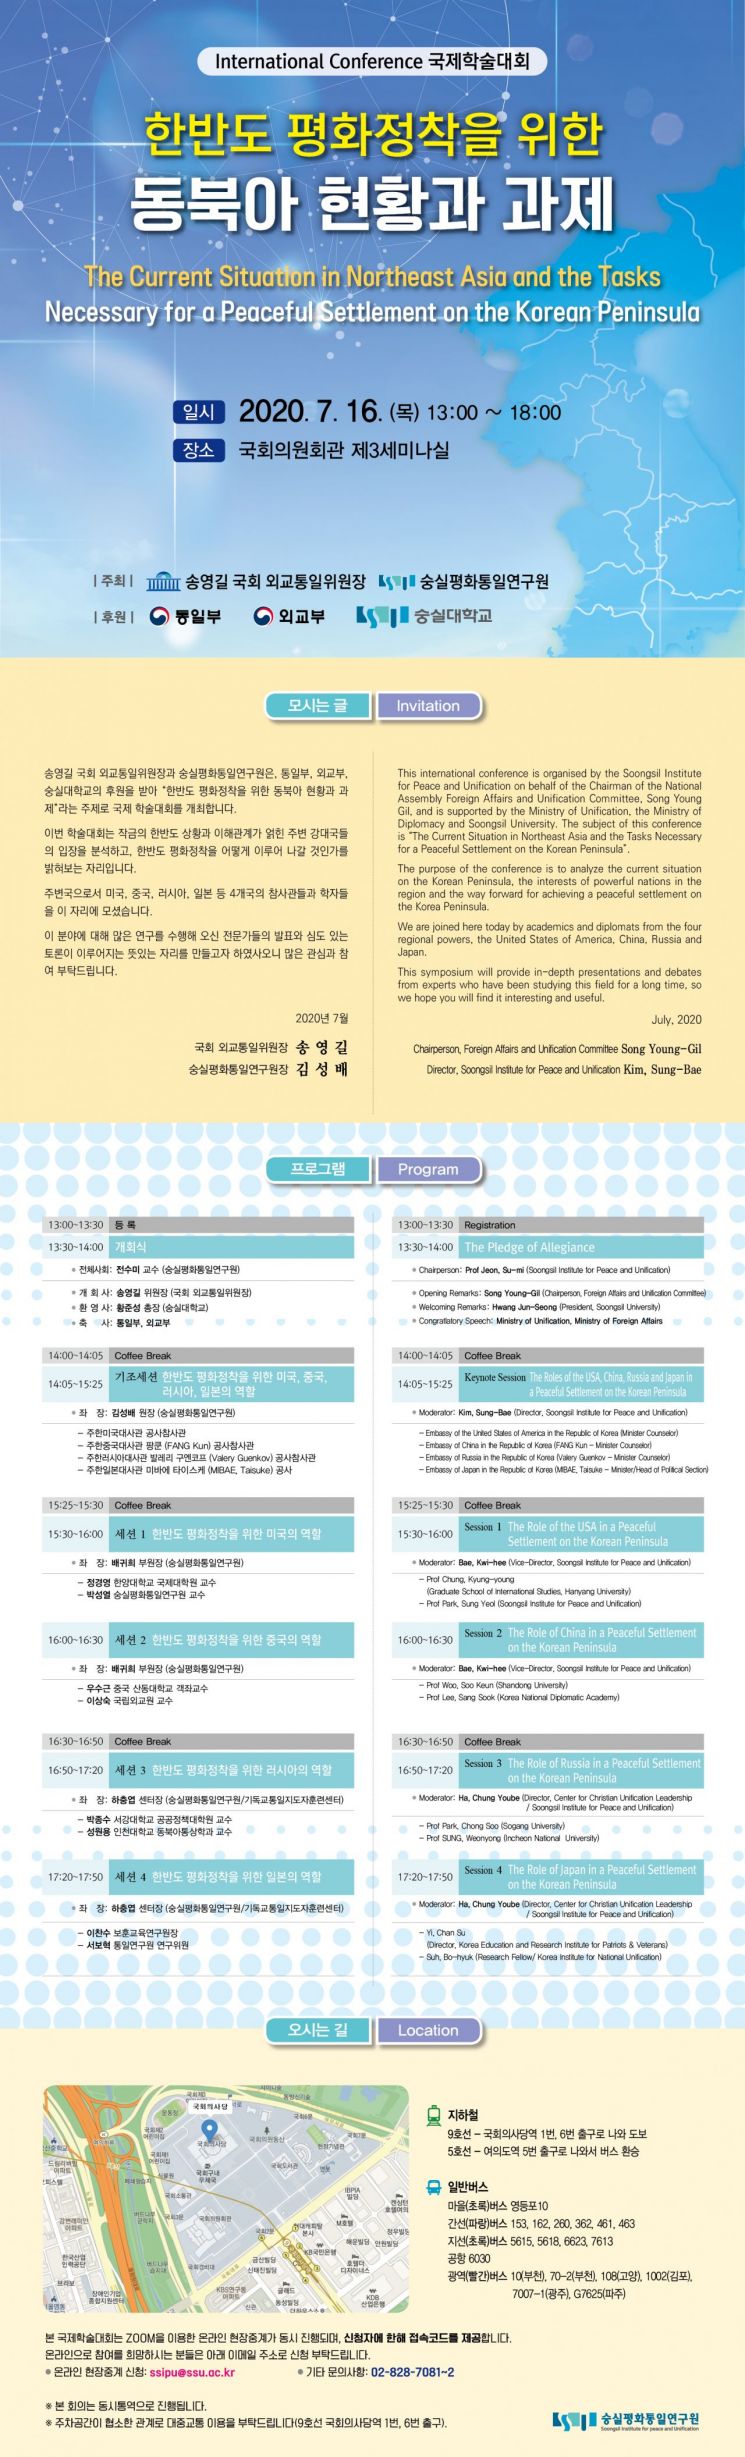 숭실대, '동북아 현황과 과제' 국제학술대회 개최   